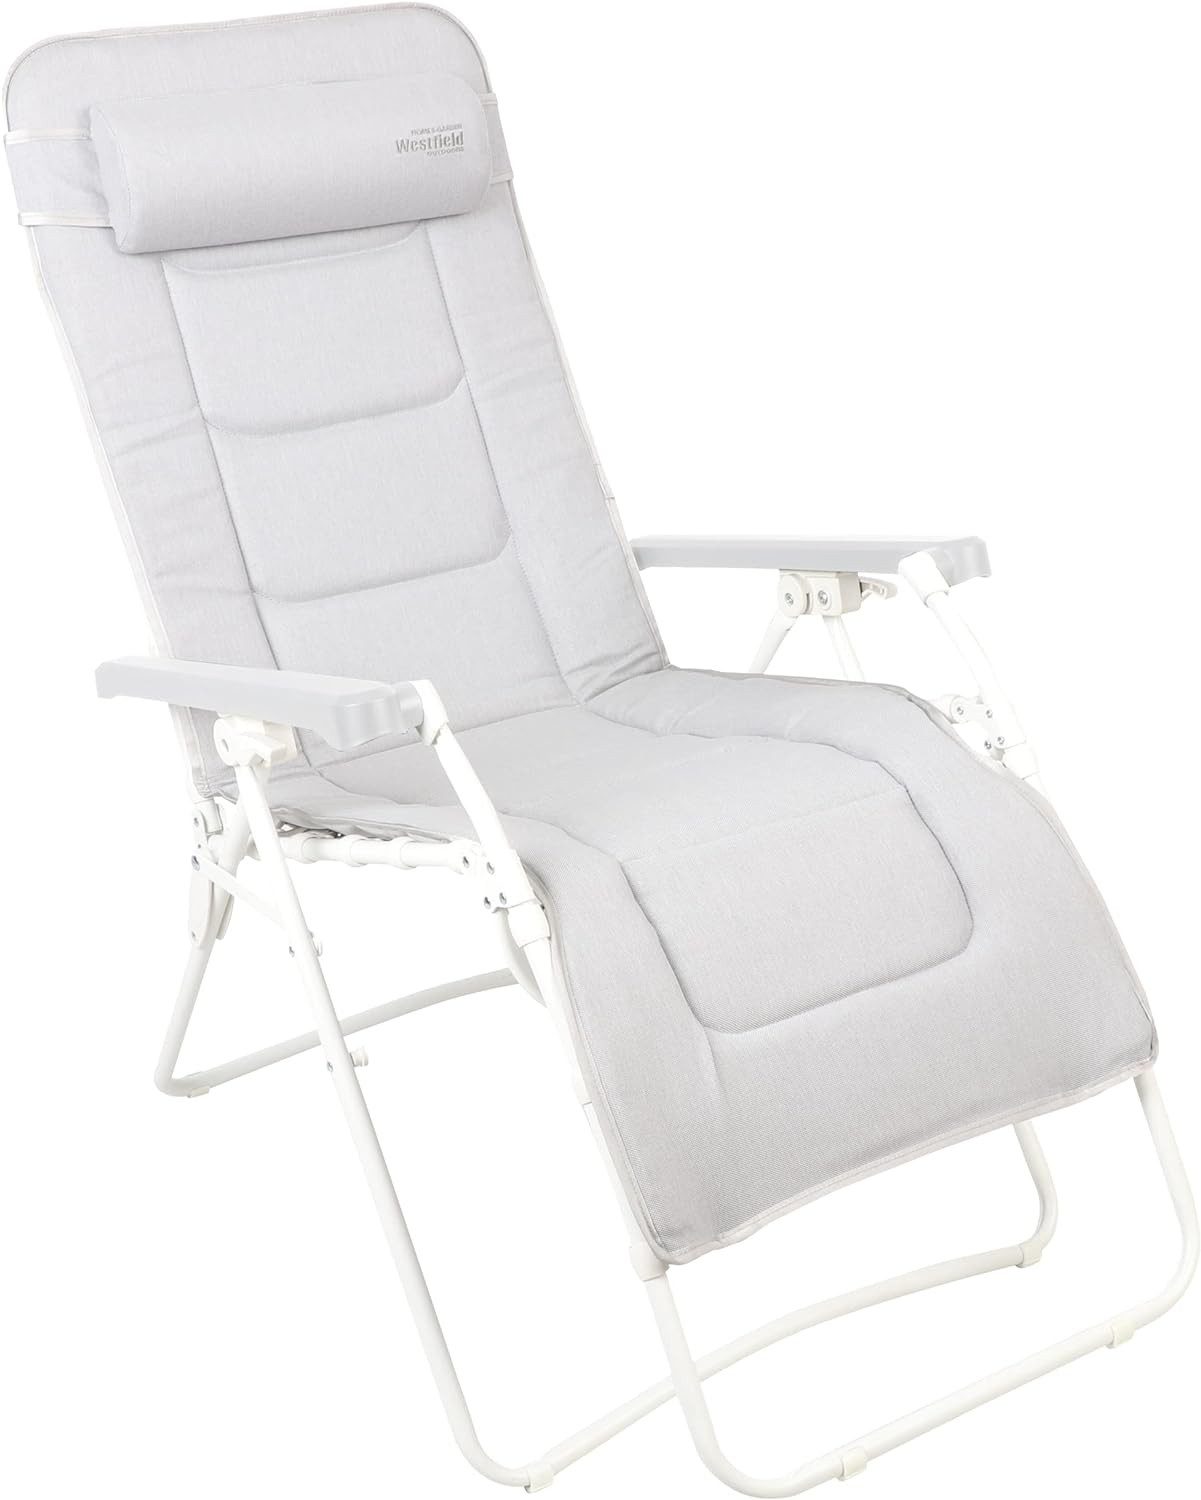 Westfield Gartenliege Relaxliege 509029 Liegestuhl Sonnenliege Relaxsessel weiß, Relaxsessel mit Kopfkissen, stufenlos verstellbar, klappbar, 140 kg Tragkraft, Camping